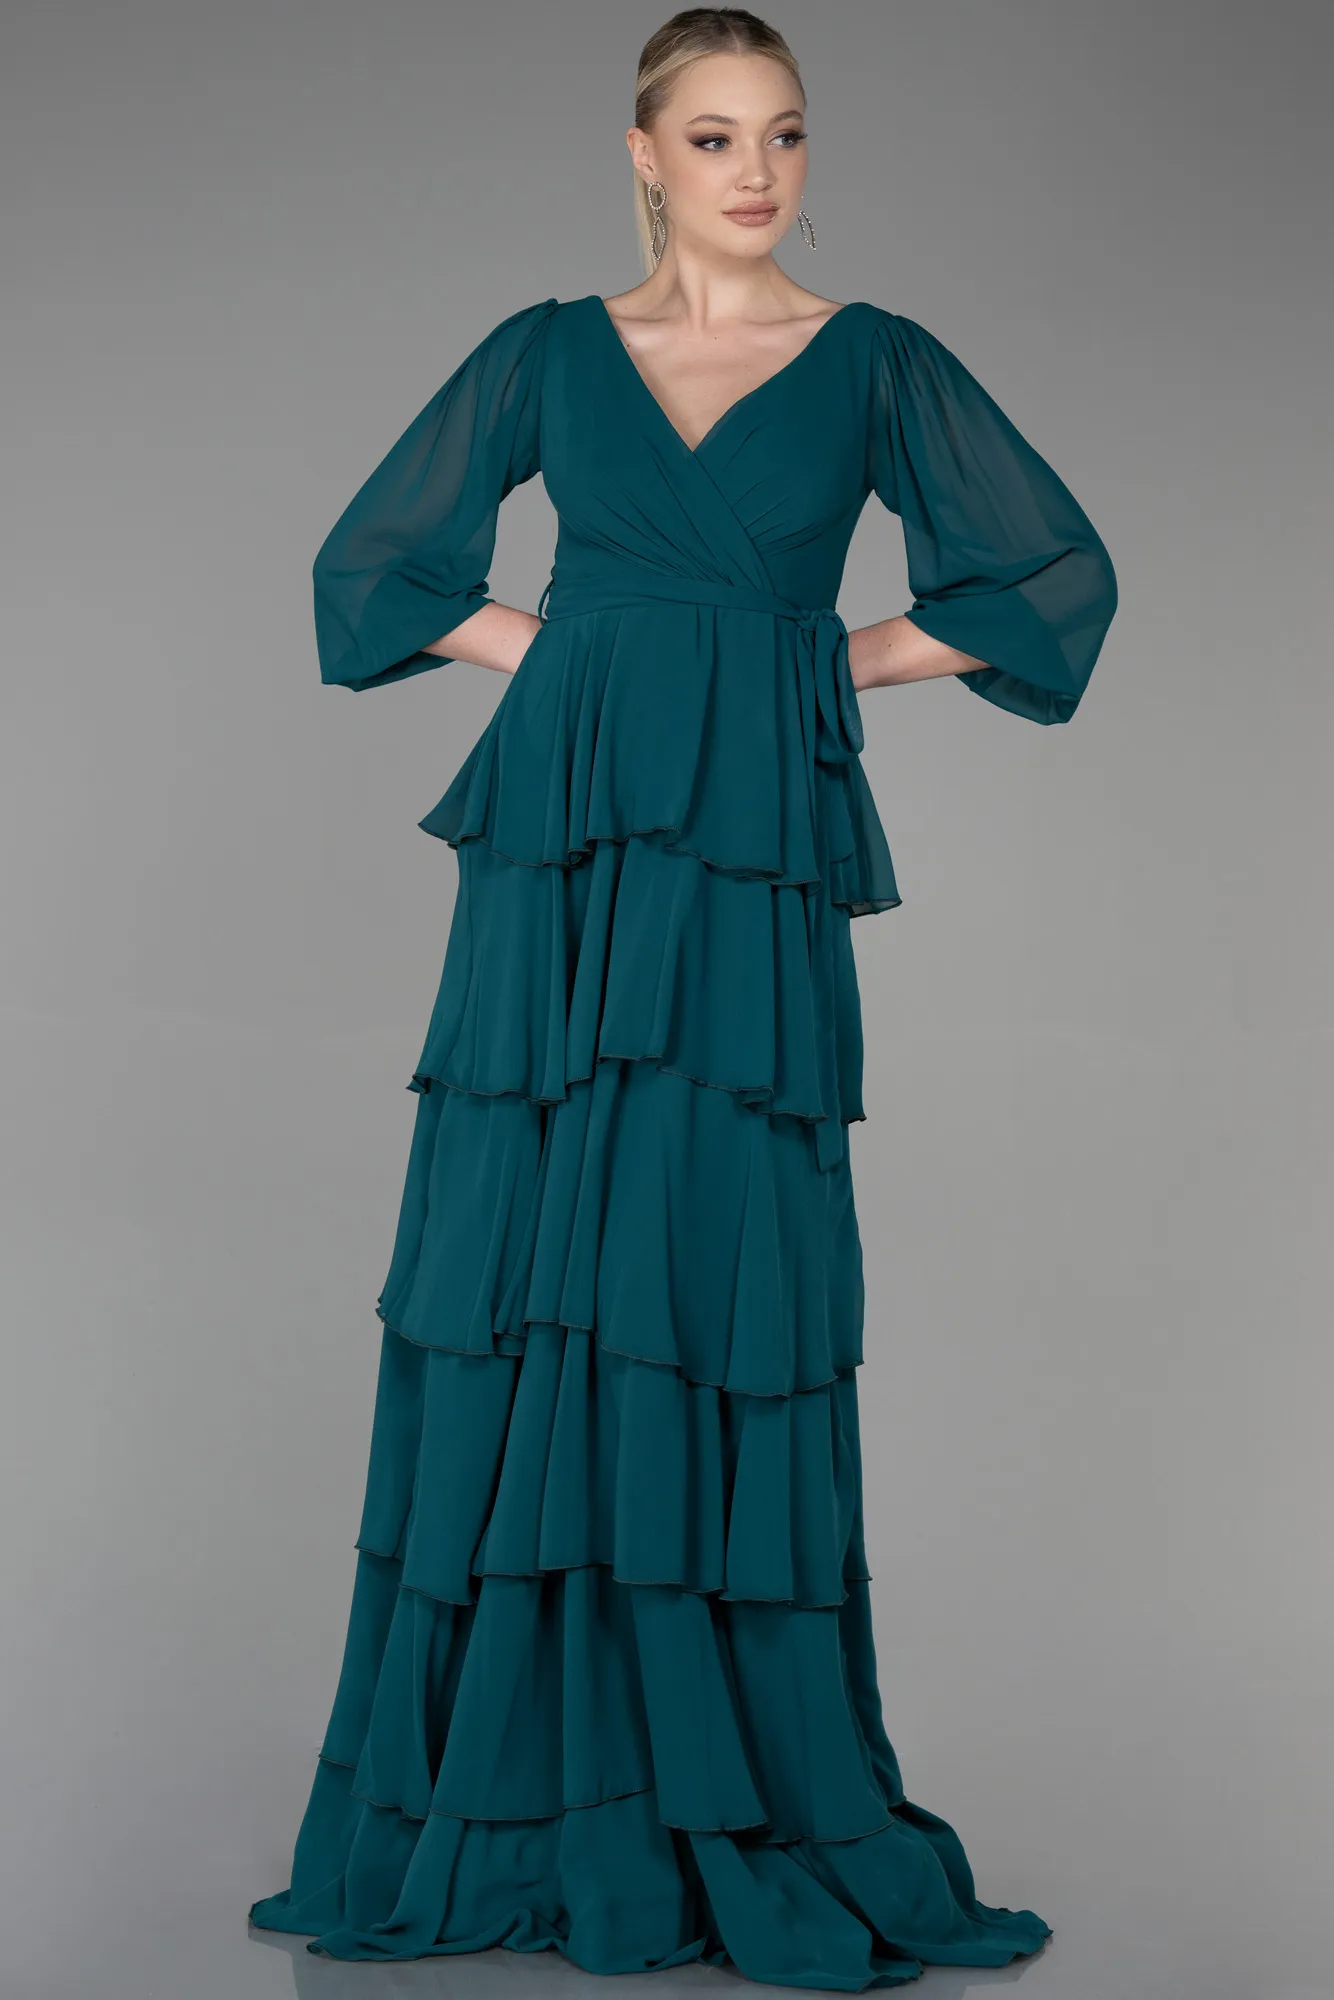 Emerald Green-Long Chiffon Evening Dress ABU2322